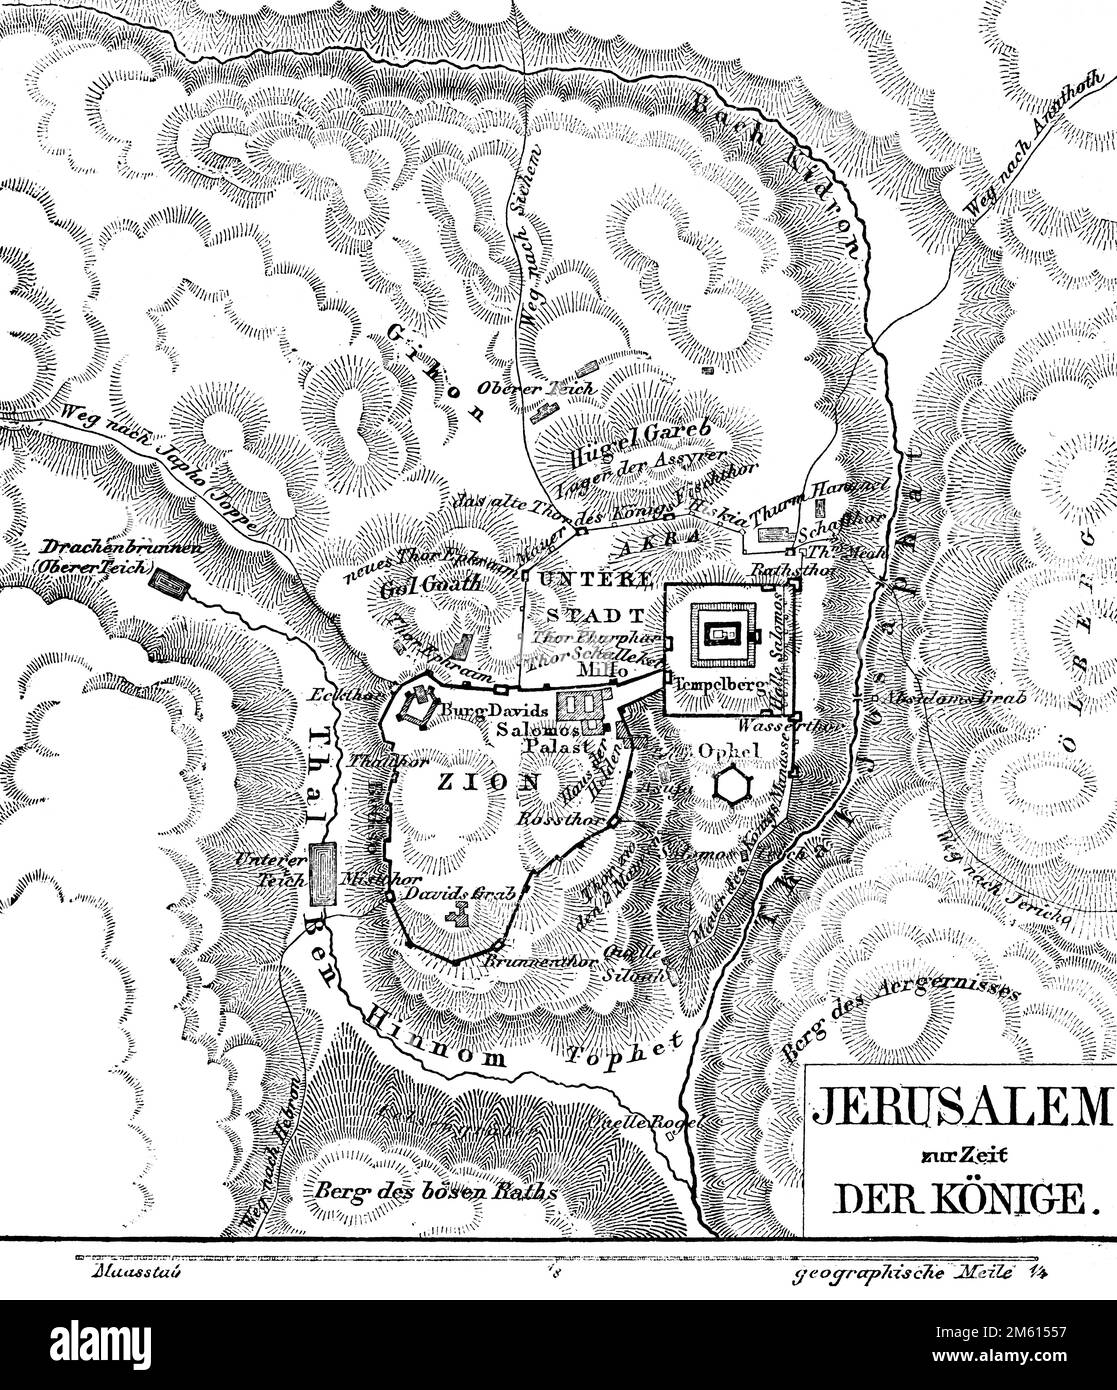 Jerusalem zur Zeit der Könige, Landkarte, Bibel, Altes Testament, zweites Samuel-Buch, historische Illustration 1850 Stockfoto